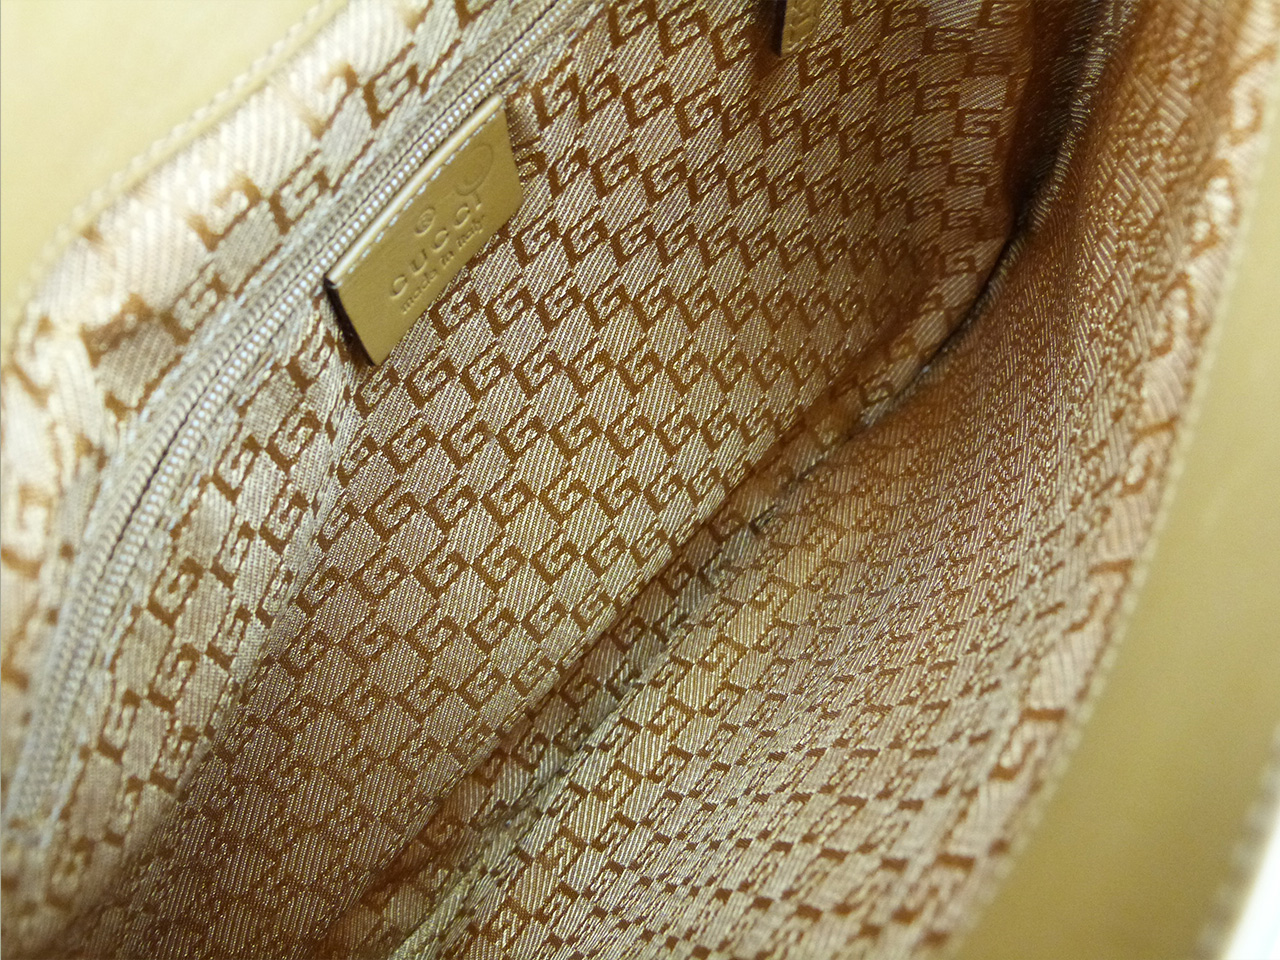 Sac à épaule Gucci modèle Jackie Authentique d'occasion en toile beige et cuir camel